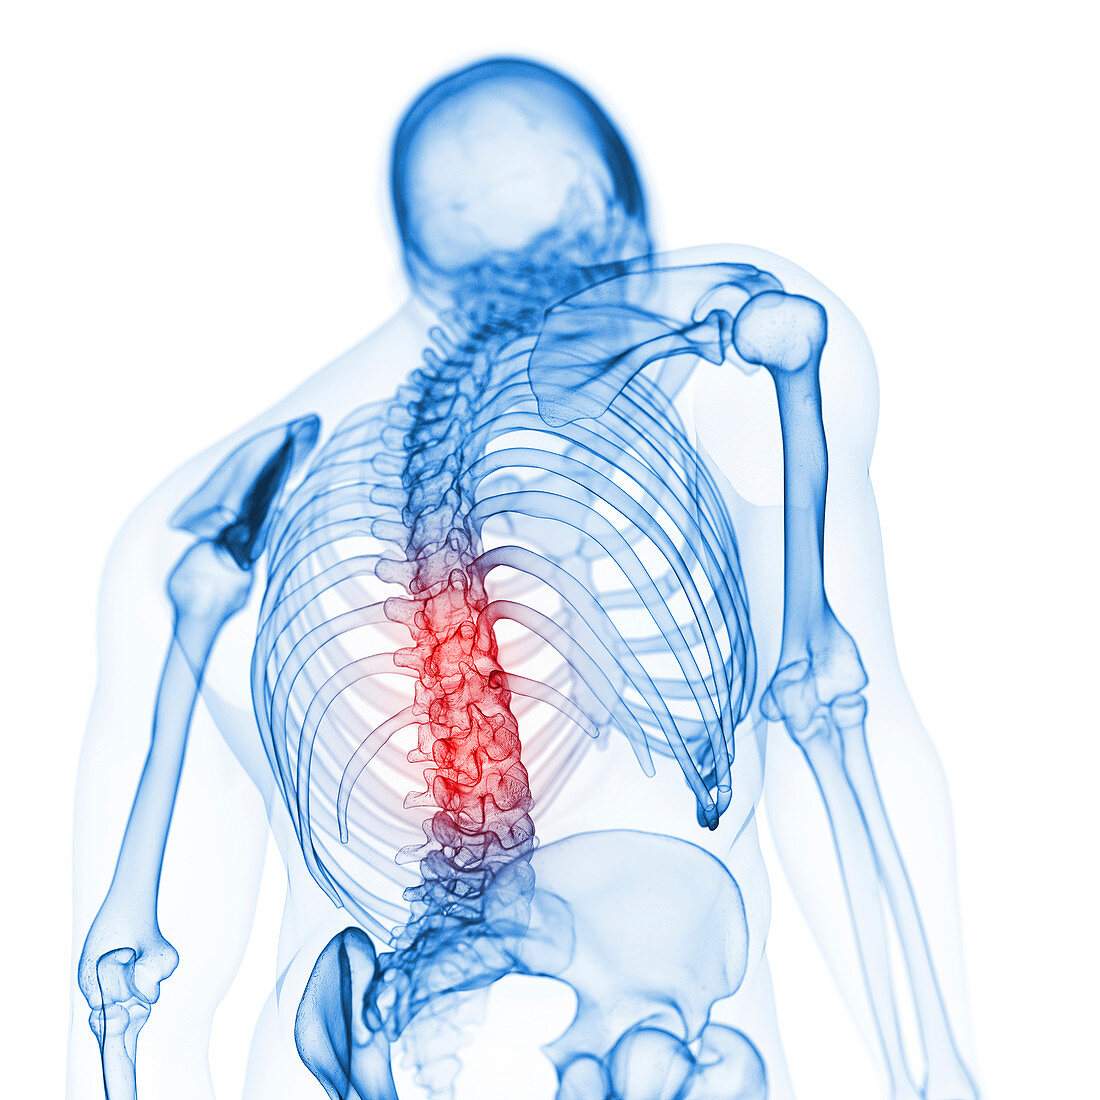 Illustration of the back bones